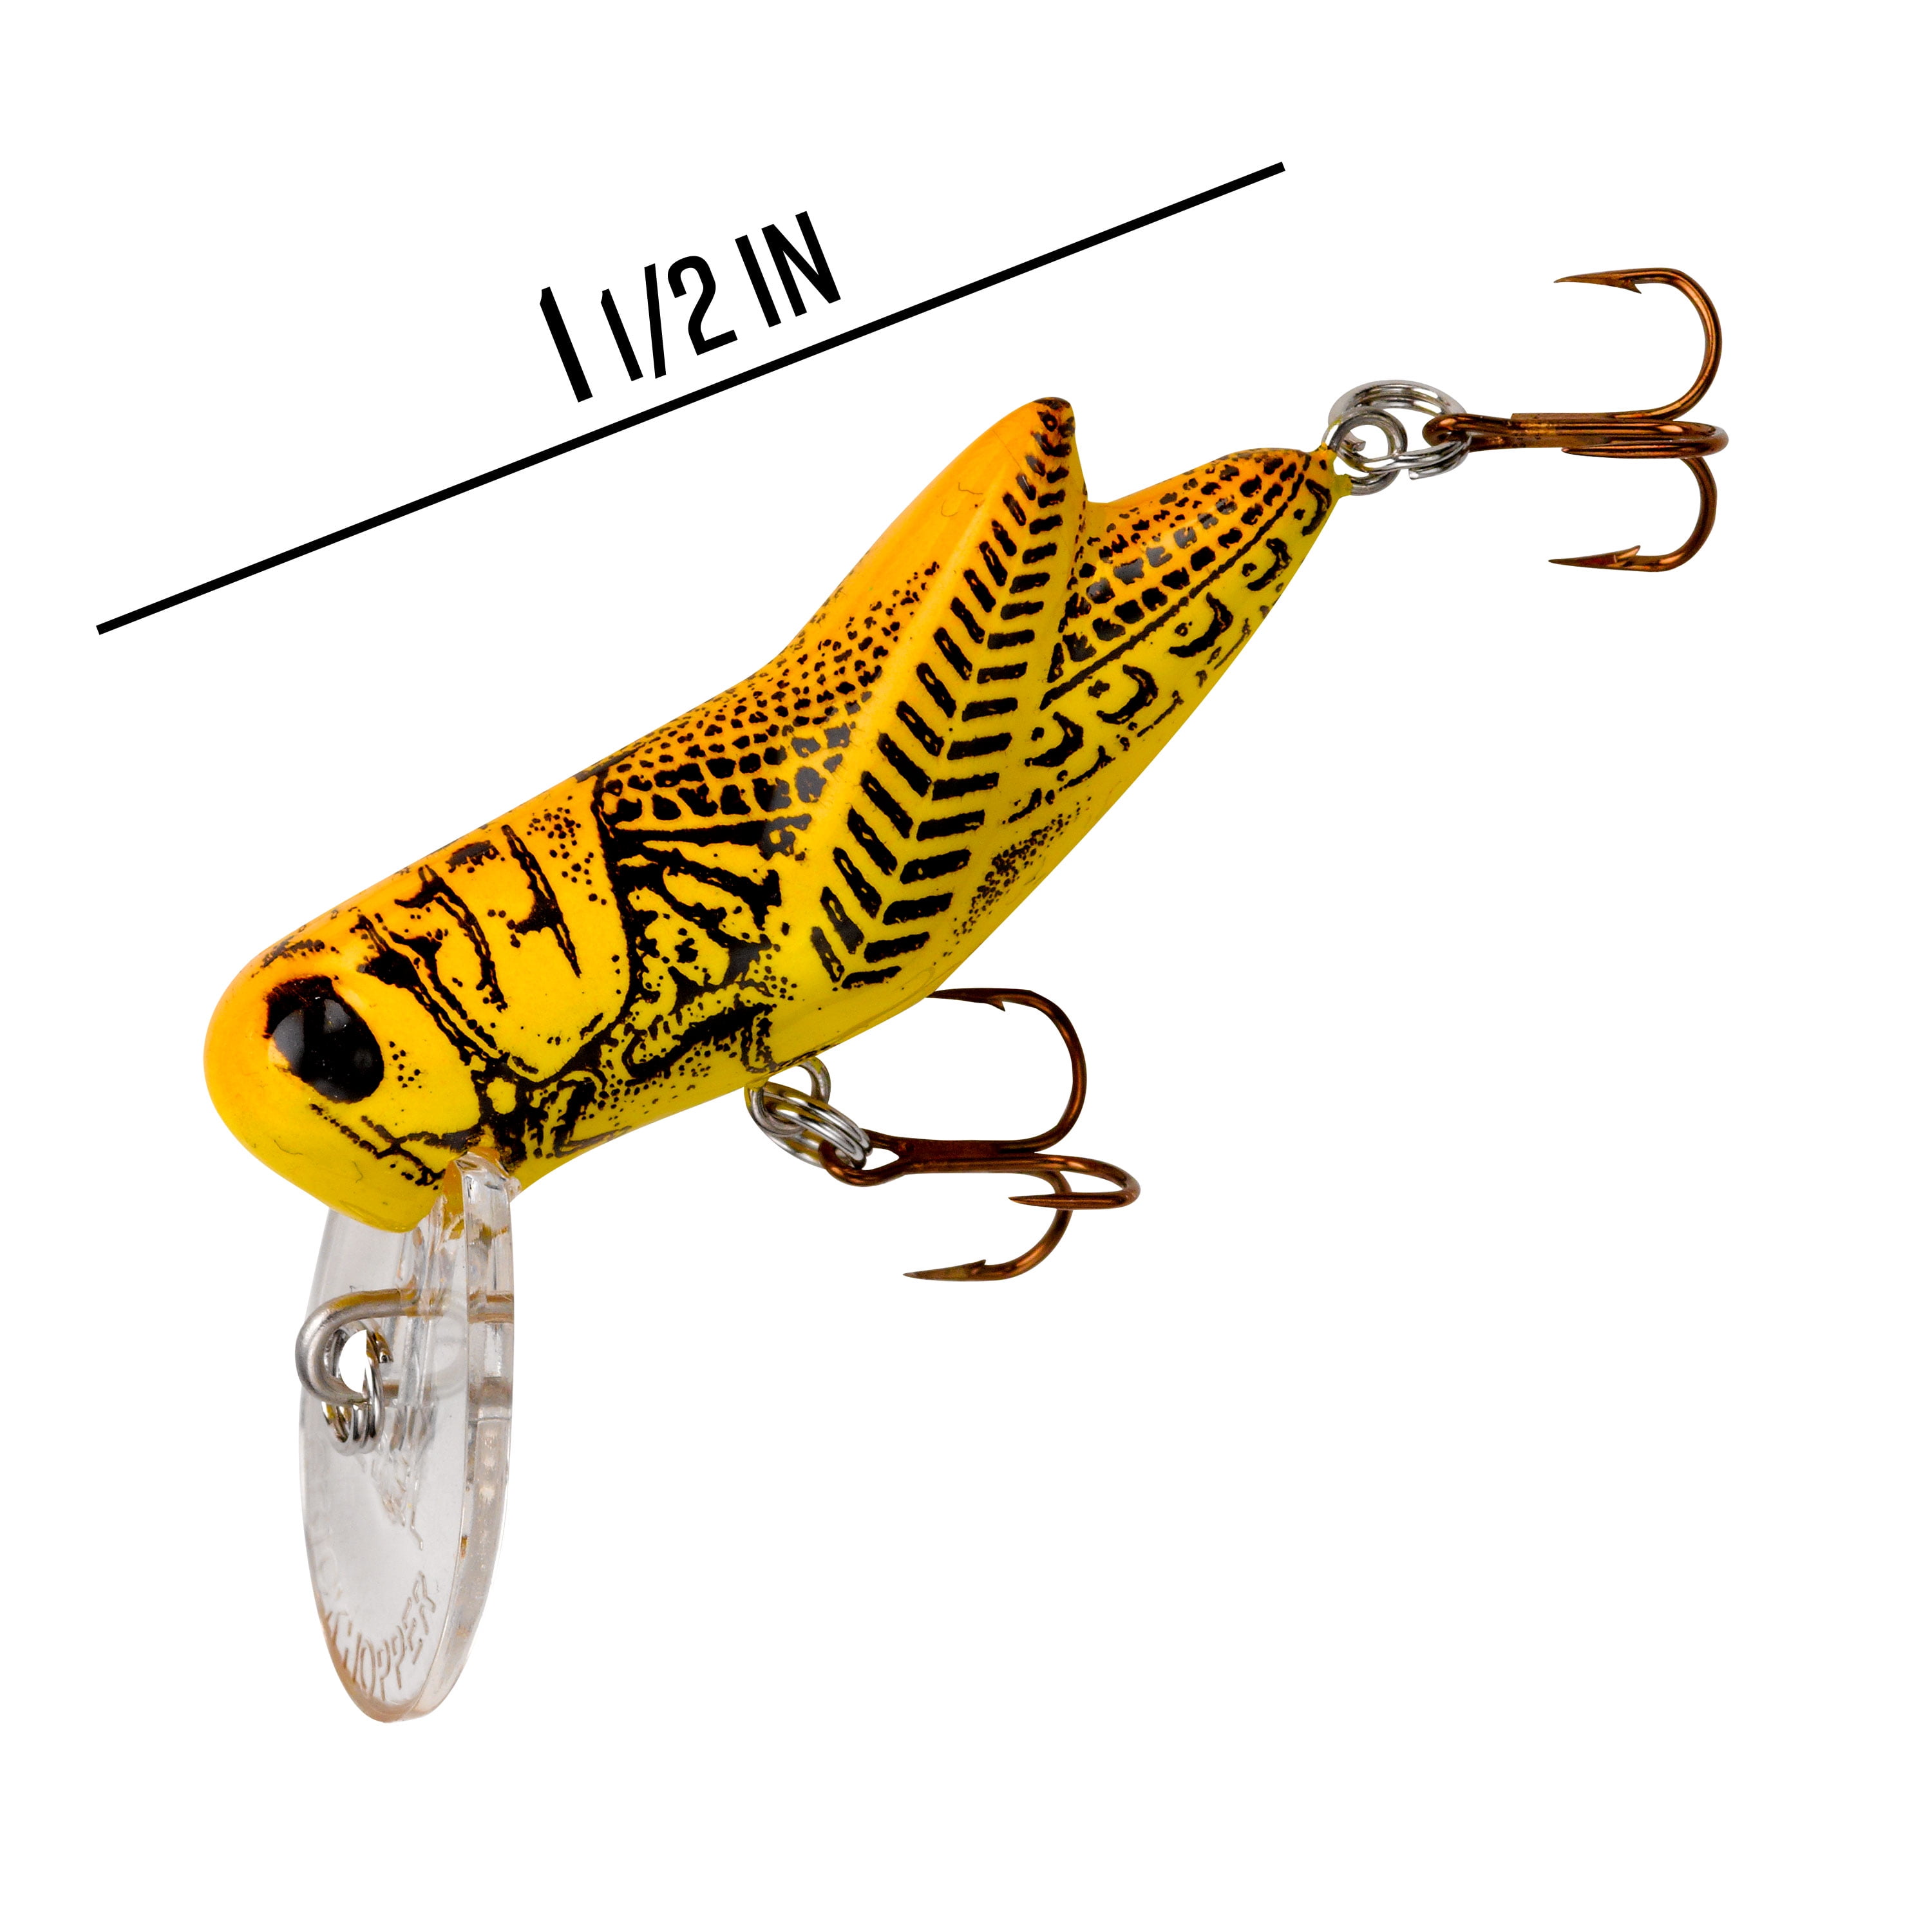 Rebel Crickhopper Fishing Lure Hard Bait Green Grasshopper 1 1/2 in 3/32 oz  